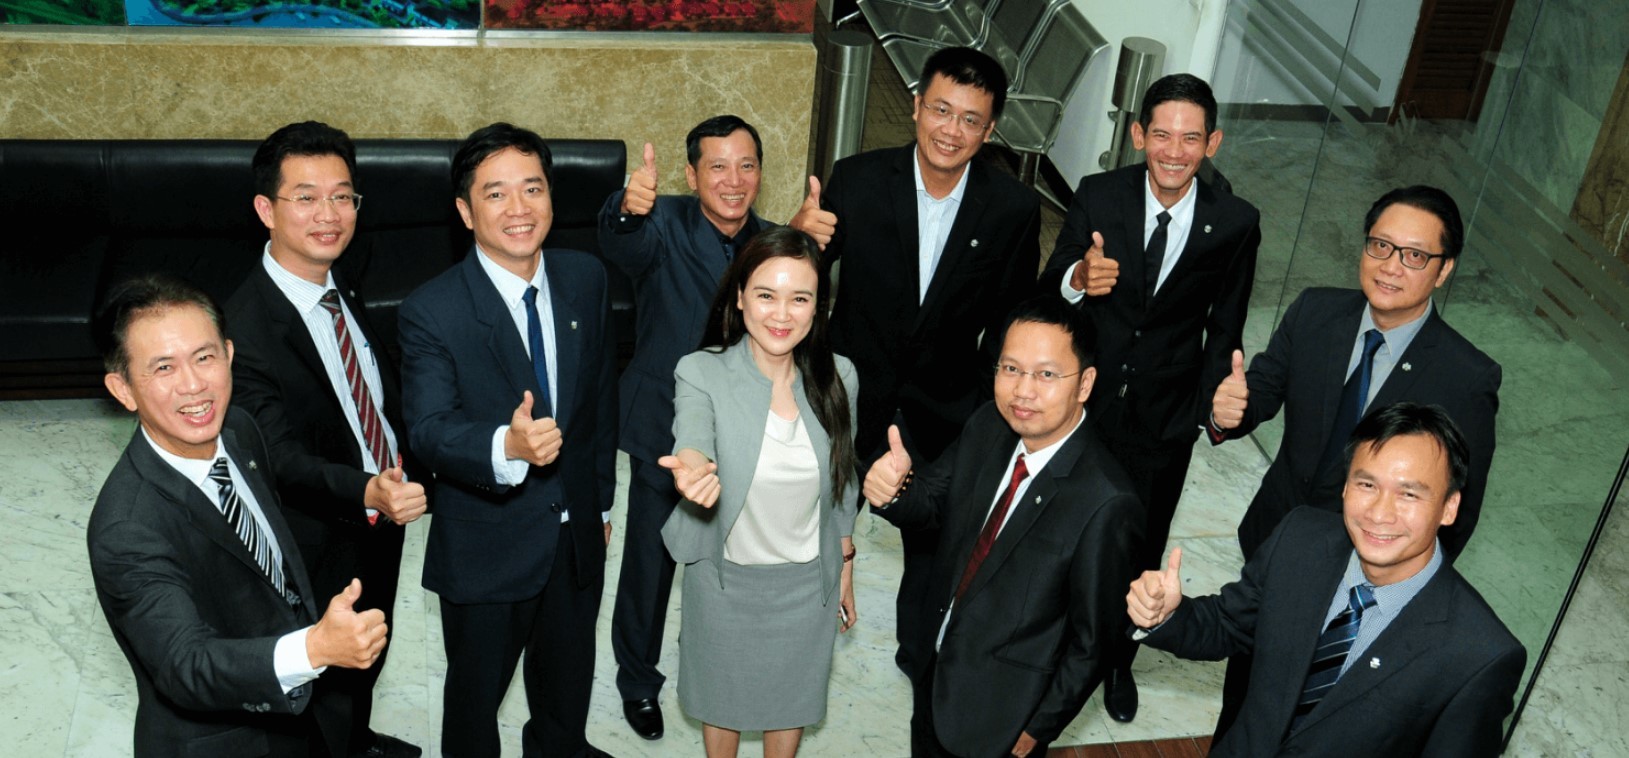 
Đội ngũ nhân viên mẫn cán và chuyên nghiệp của Nam Long Group
